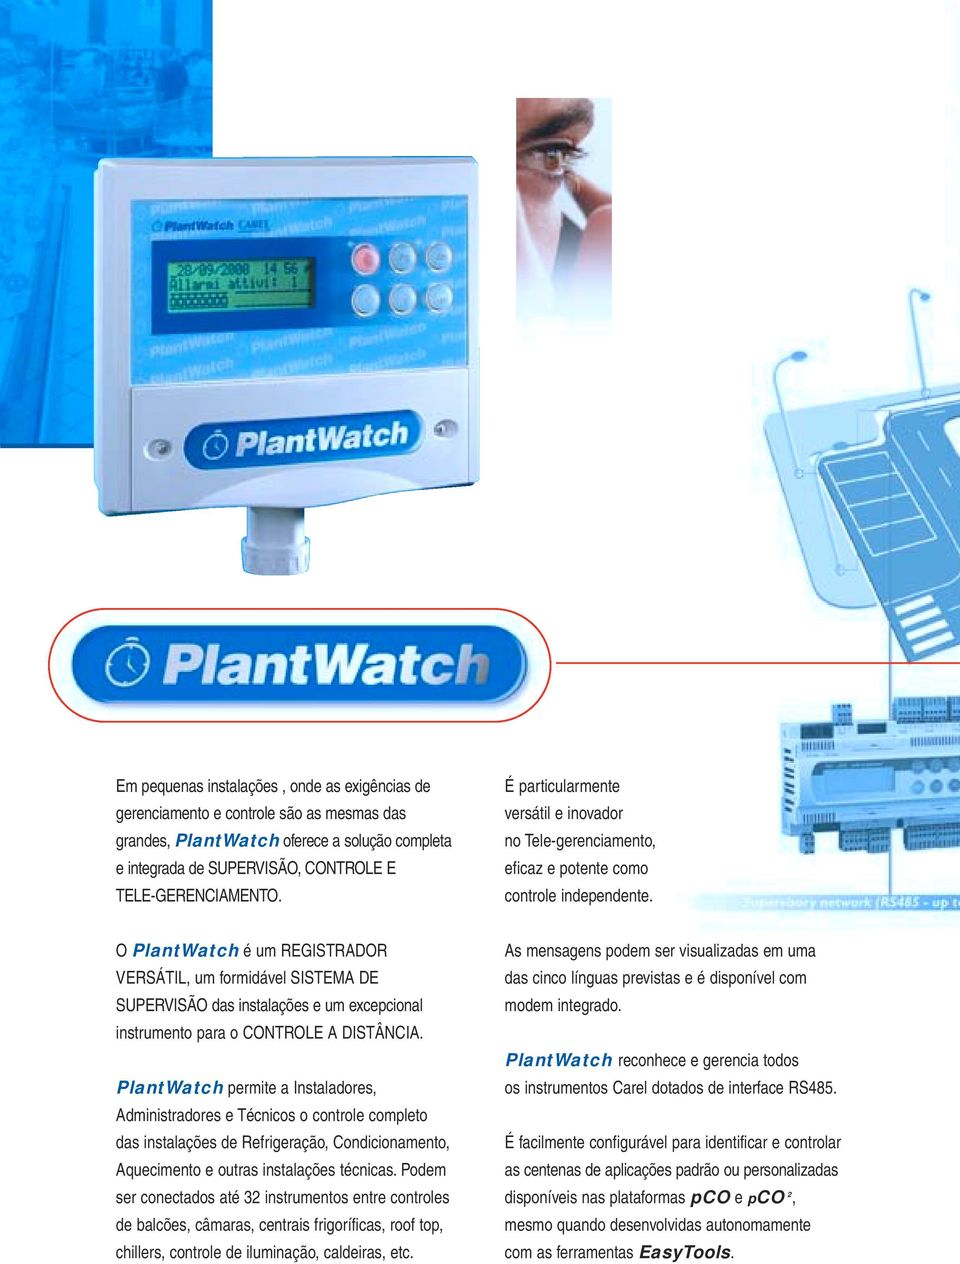 O PlantWatch é um REGISTRADOR VERSÁTIL, um formidável SISTEMA DE SUPERVISÃO das instalações e um excepcional instrumento para o CONTROLE A DISTÂNCIA.